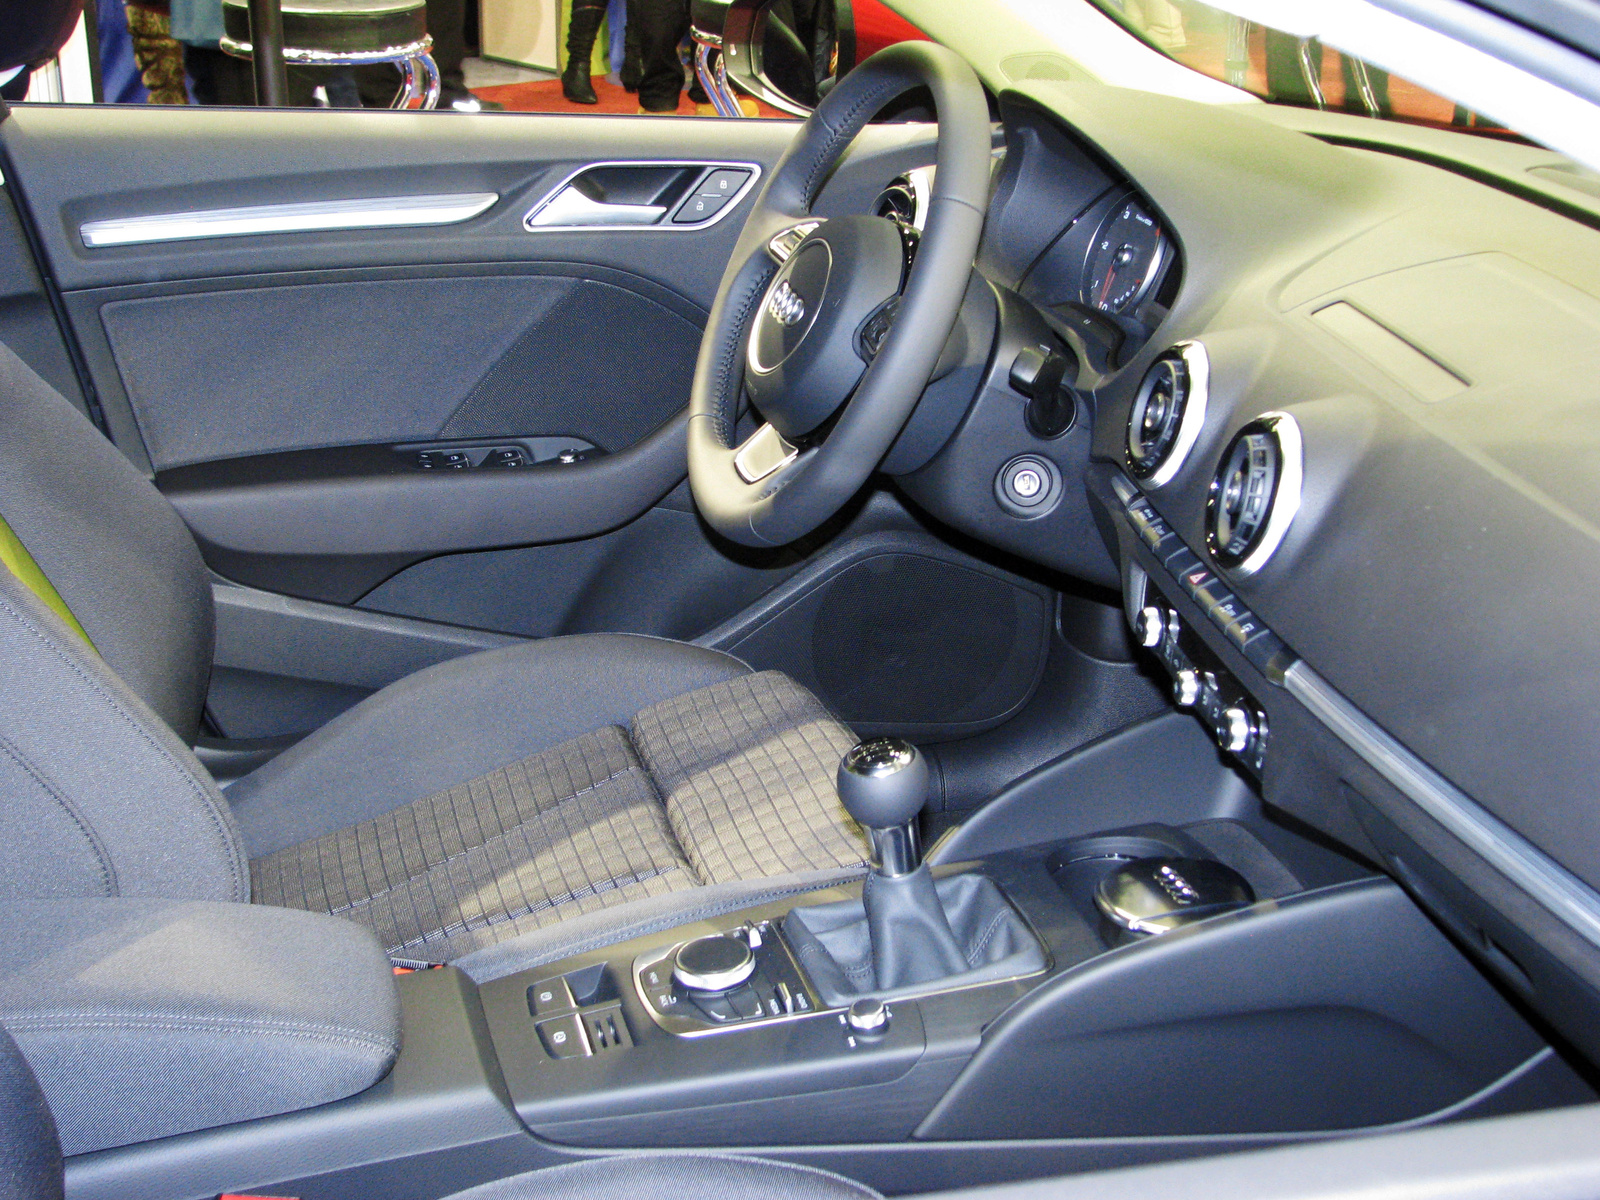 Audi A3 Limousine inside